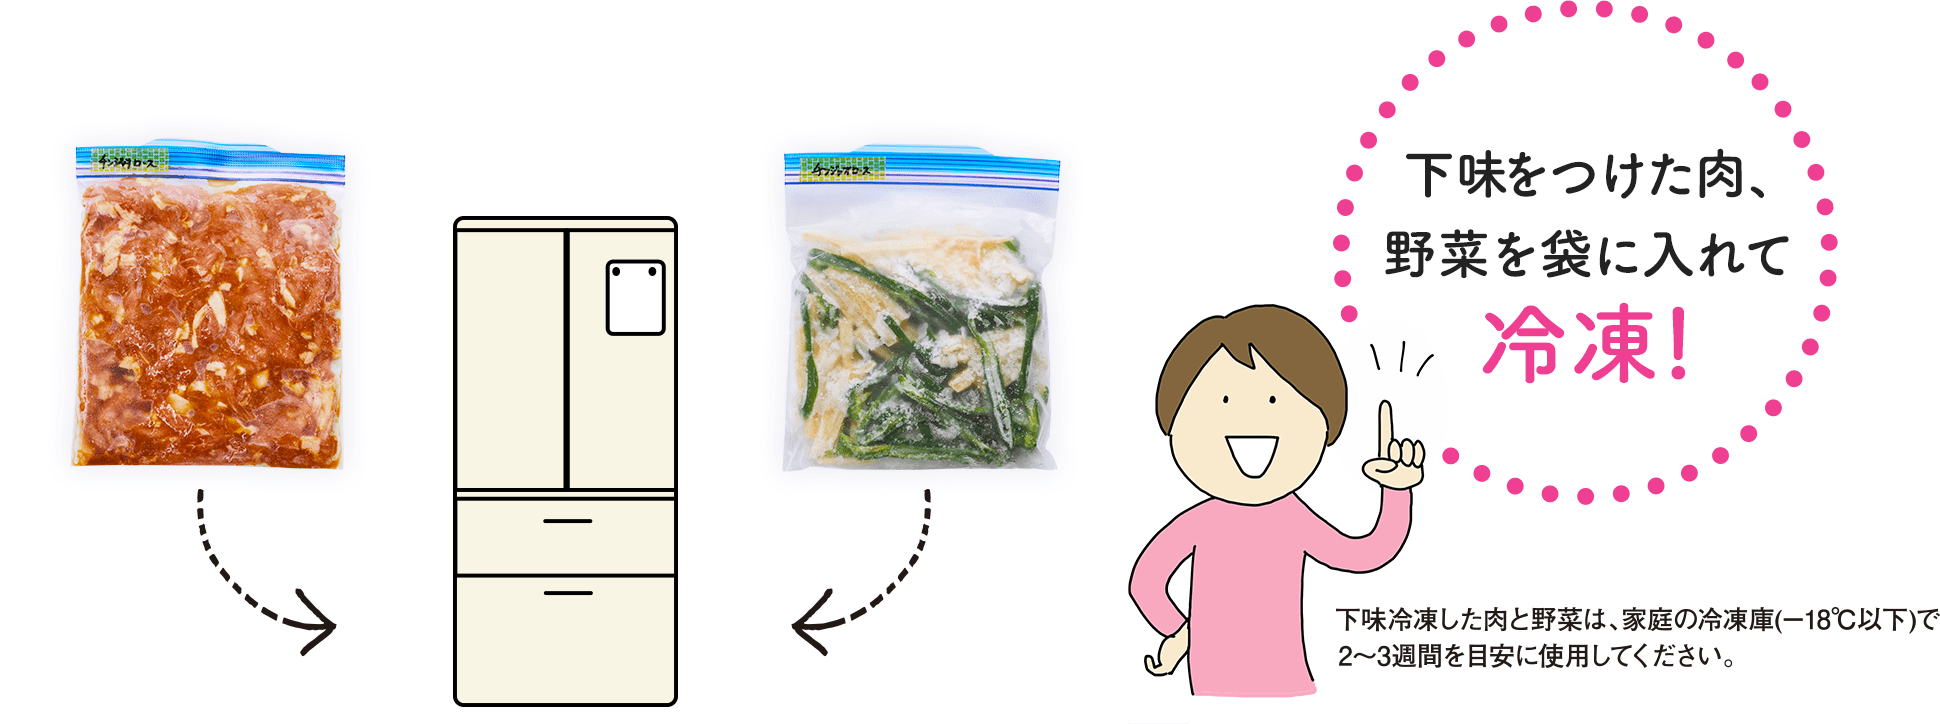 下味をつけた肉、野菜を袋に入れて冷凍! 下味冷凍した肉と野菜は、家庭の冷凍庫(－18℃以下)で2～3週間を目安に使用してください。